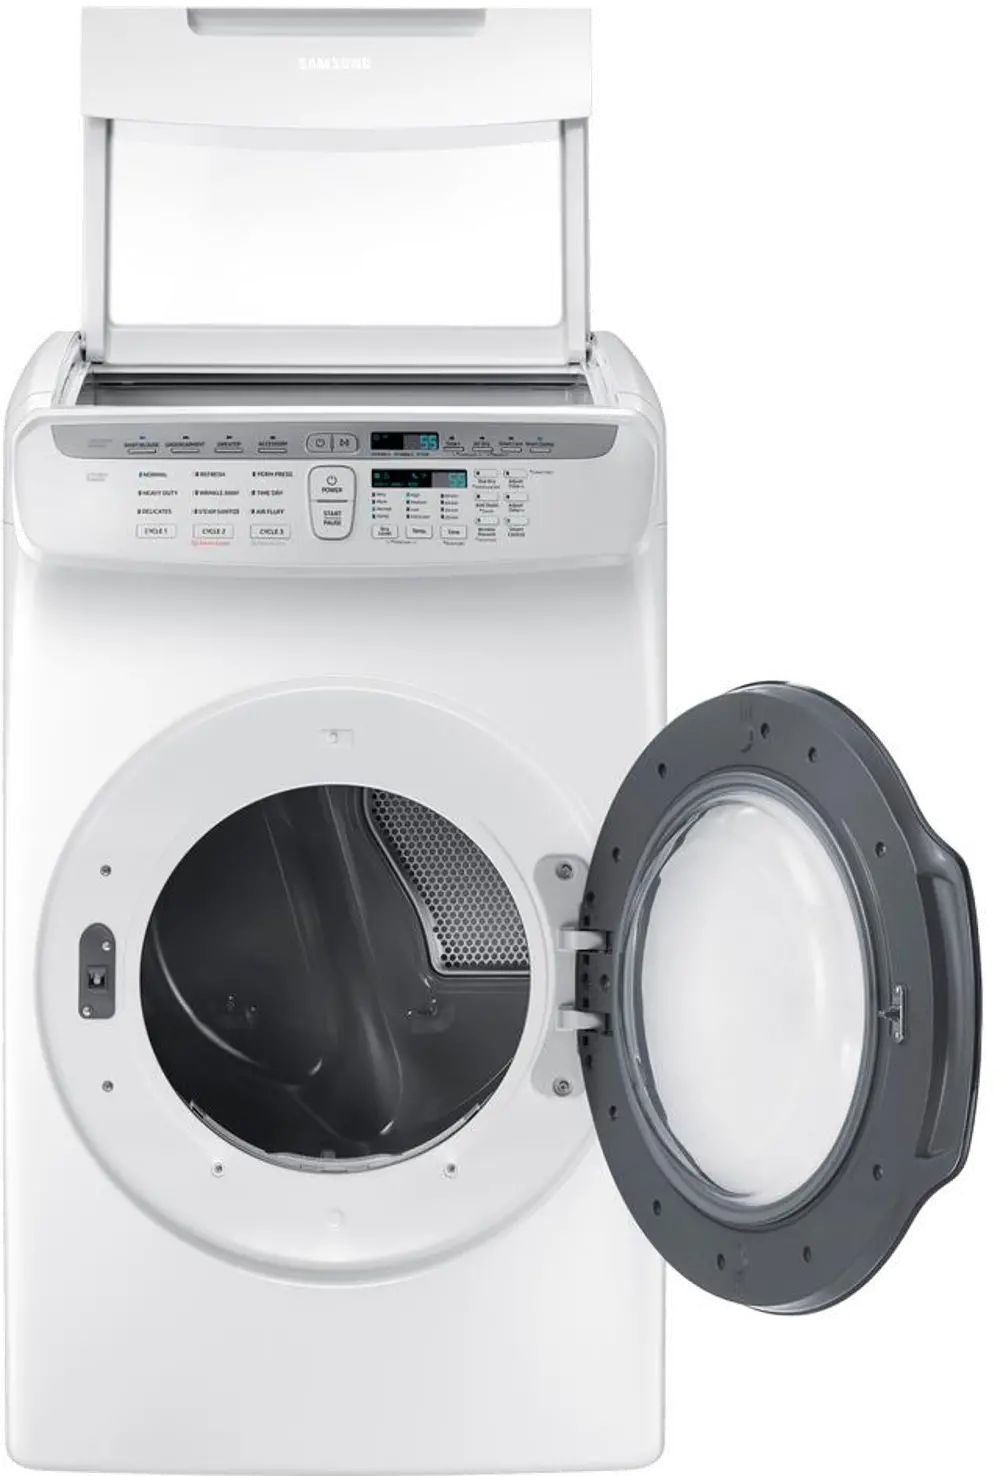 DVG55M9600W Samsung 7.5 Total cu. ft. Gas FlexDry Dryer with Steam - White-1